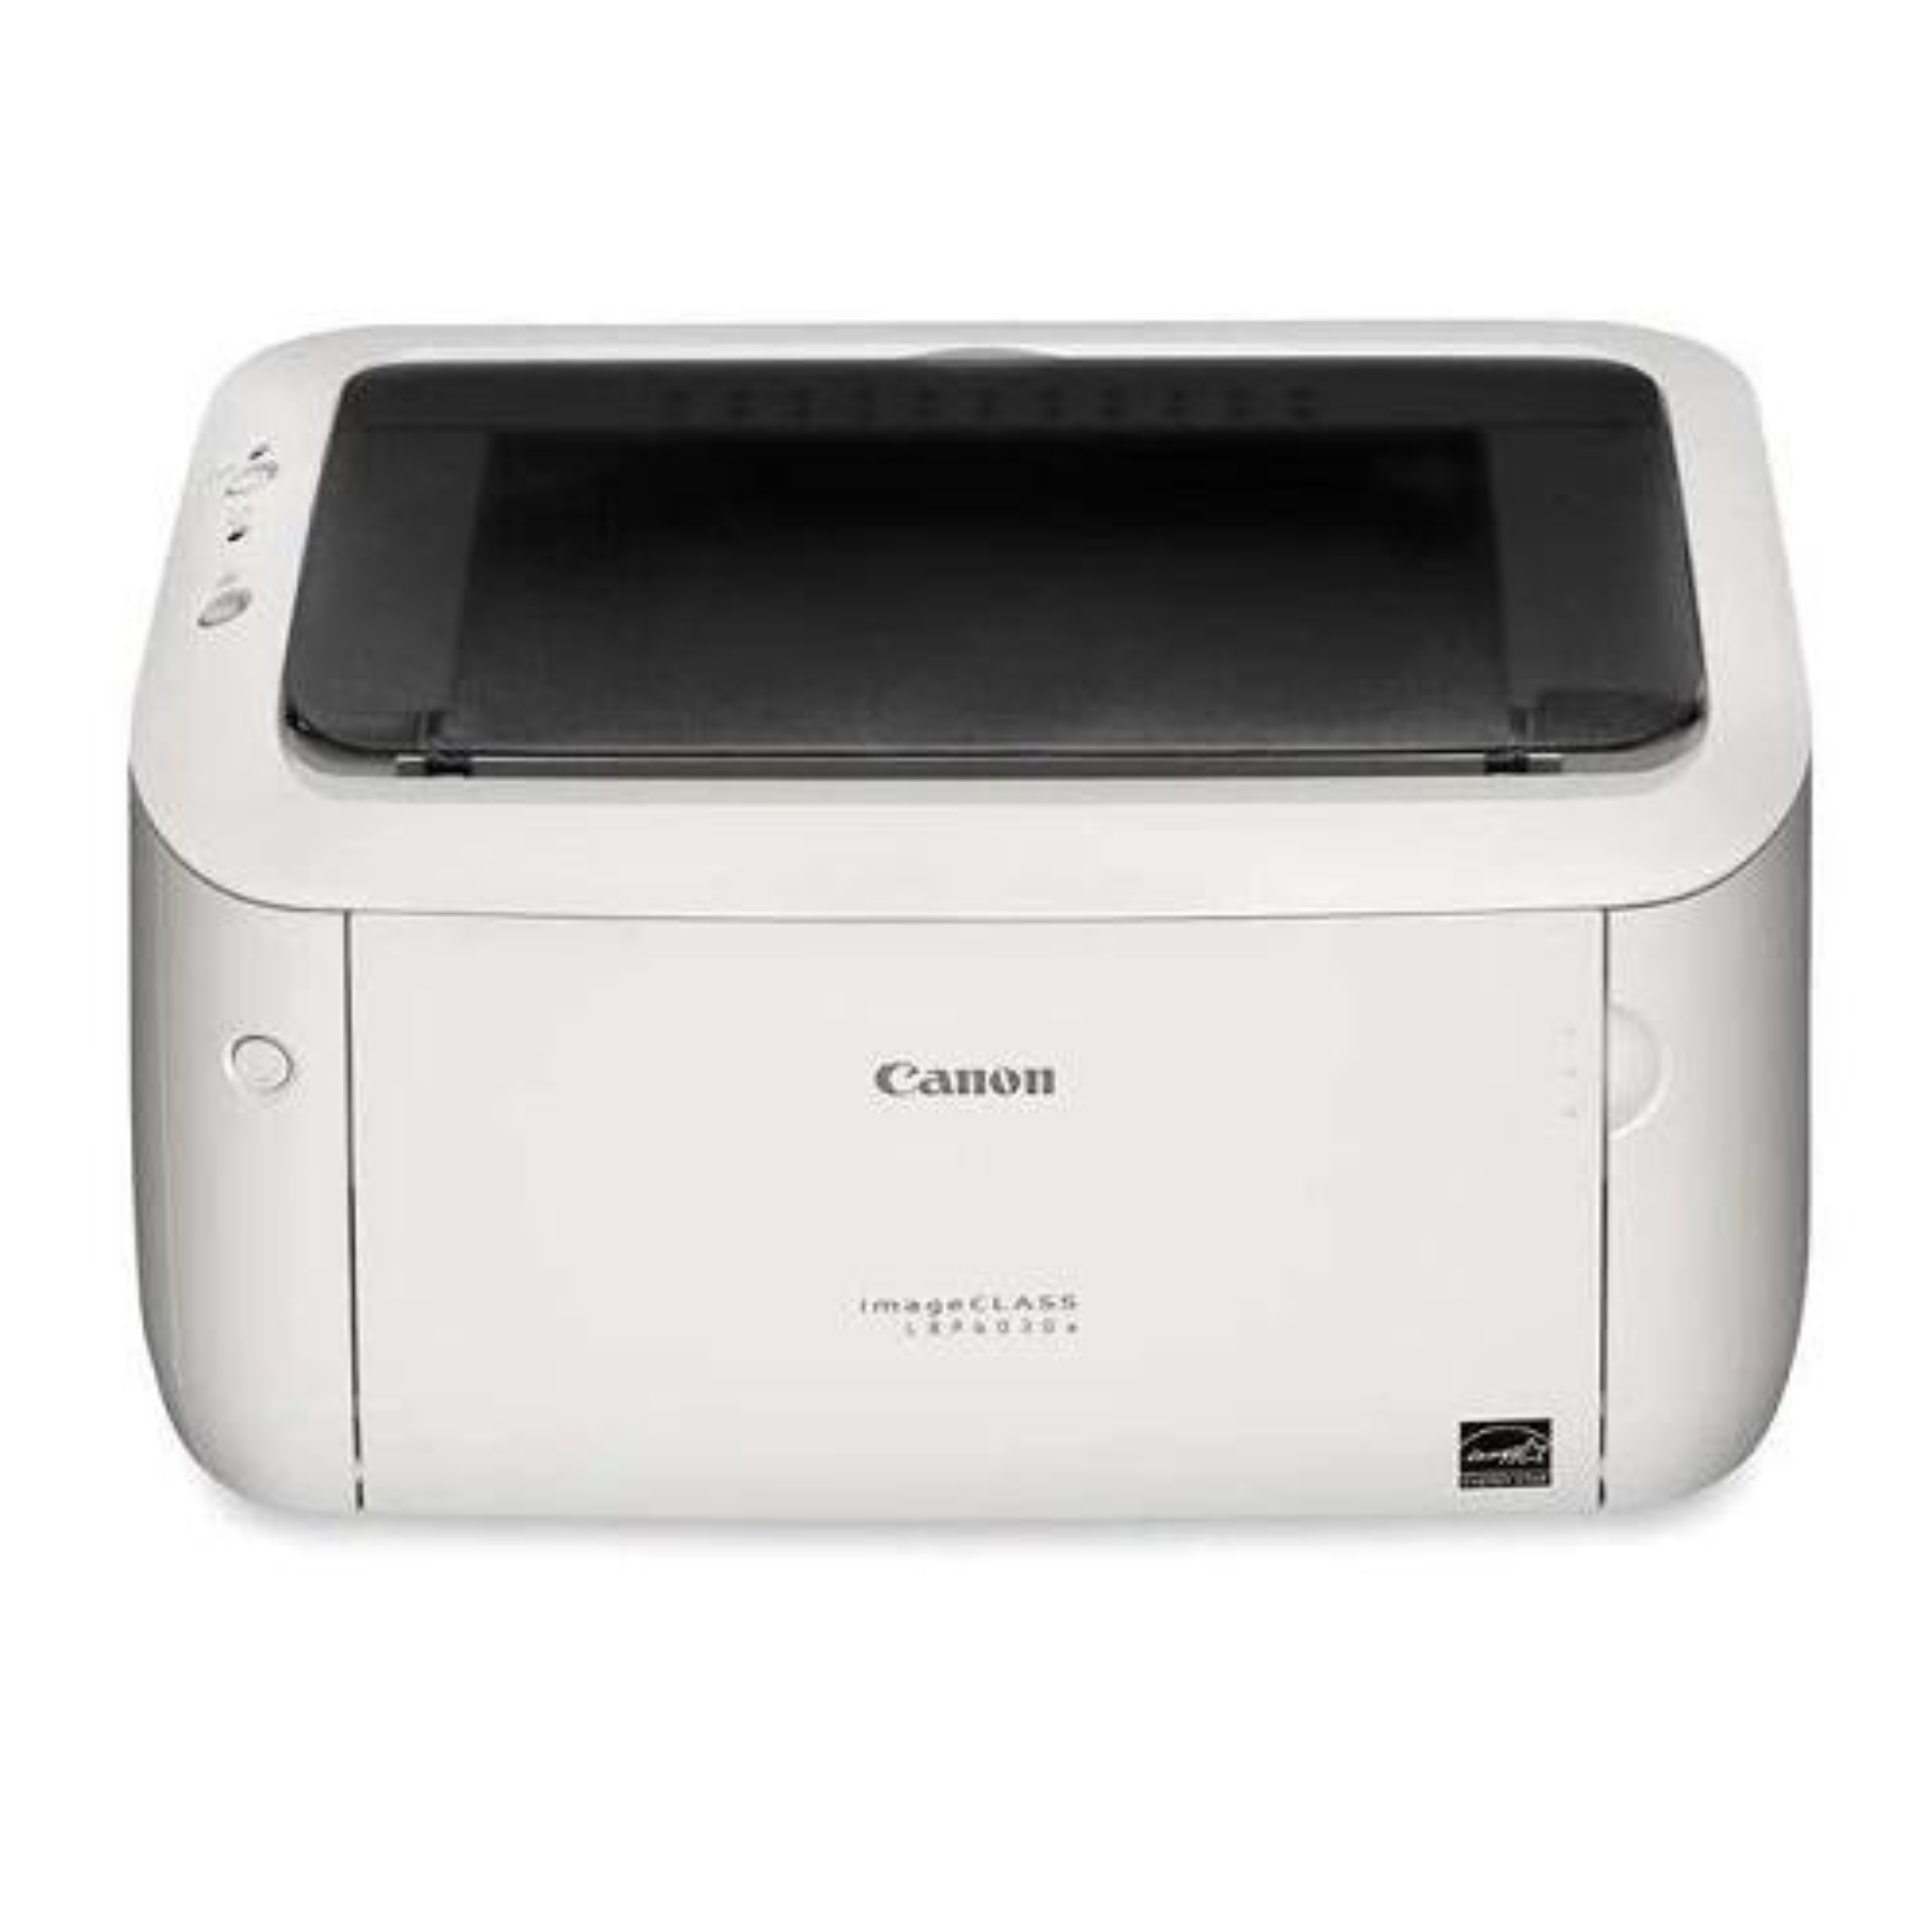 Canon imageCLASS LBP6030W Compact Monochrome Wireless Laser Printer